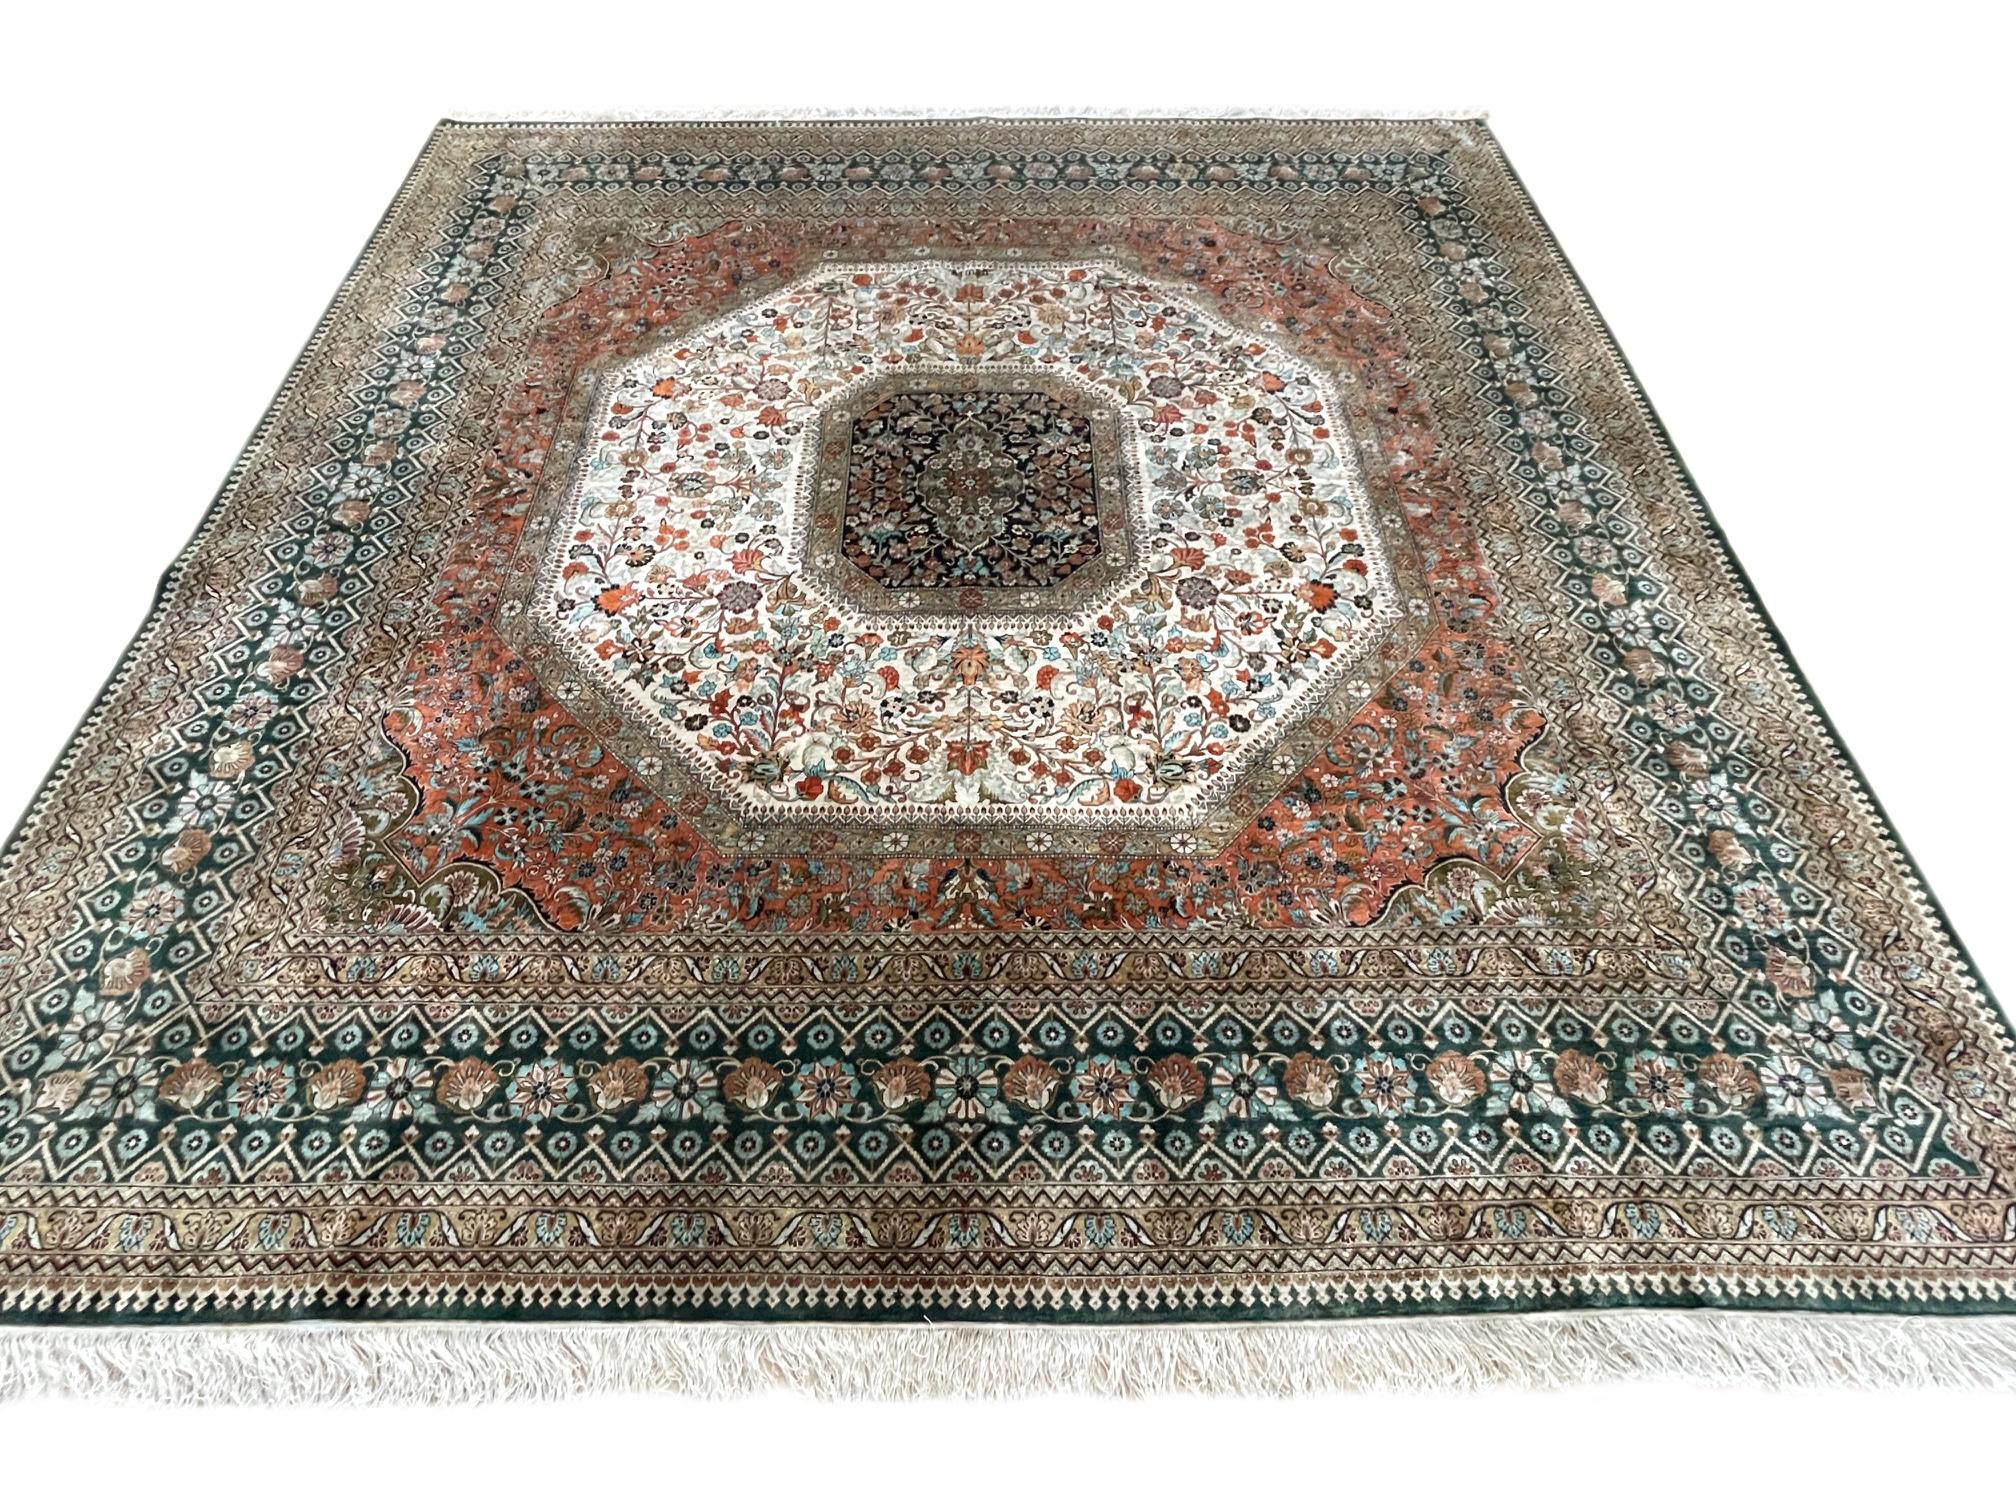 Dieser Teppich ist ein handgewebter türkischer Teppich mit Seidenflor und Seidengrund. Die Türkei ist für eine Vielzahl von Teppichen bekannt, mit denen sie ihren Ruf als eine der wichtigsten Webereien der Welt begründet hat. Dieser Teppich hat ein